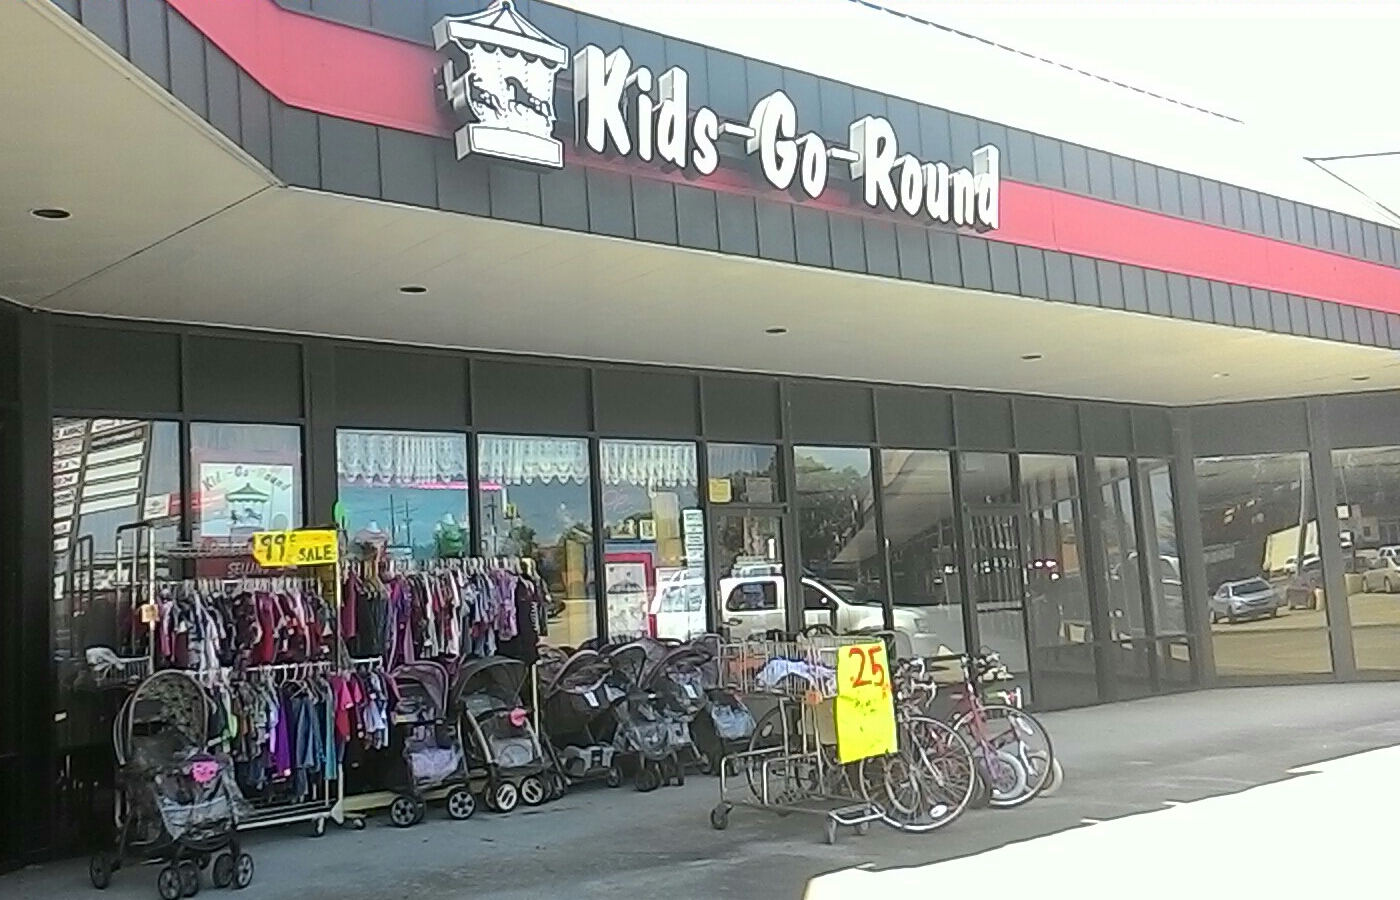 Kids-Go-Round